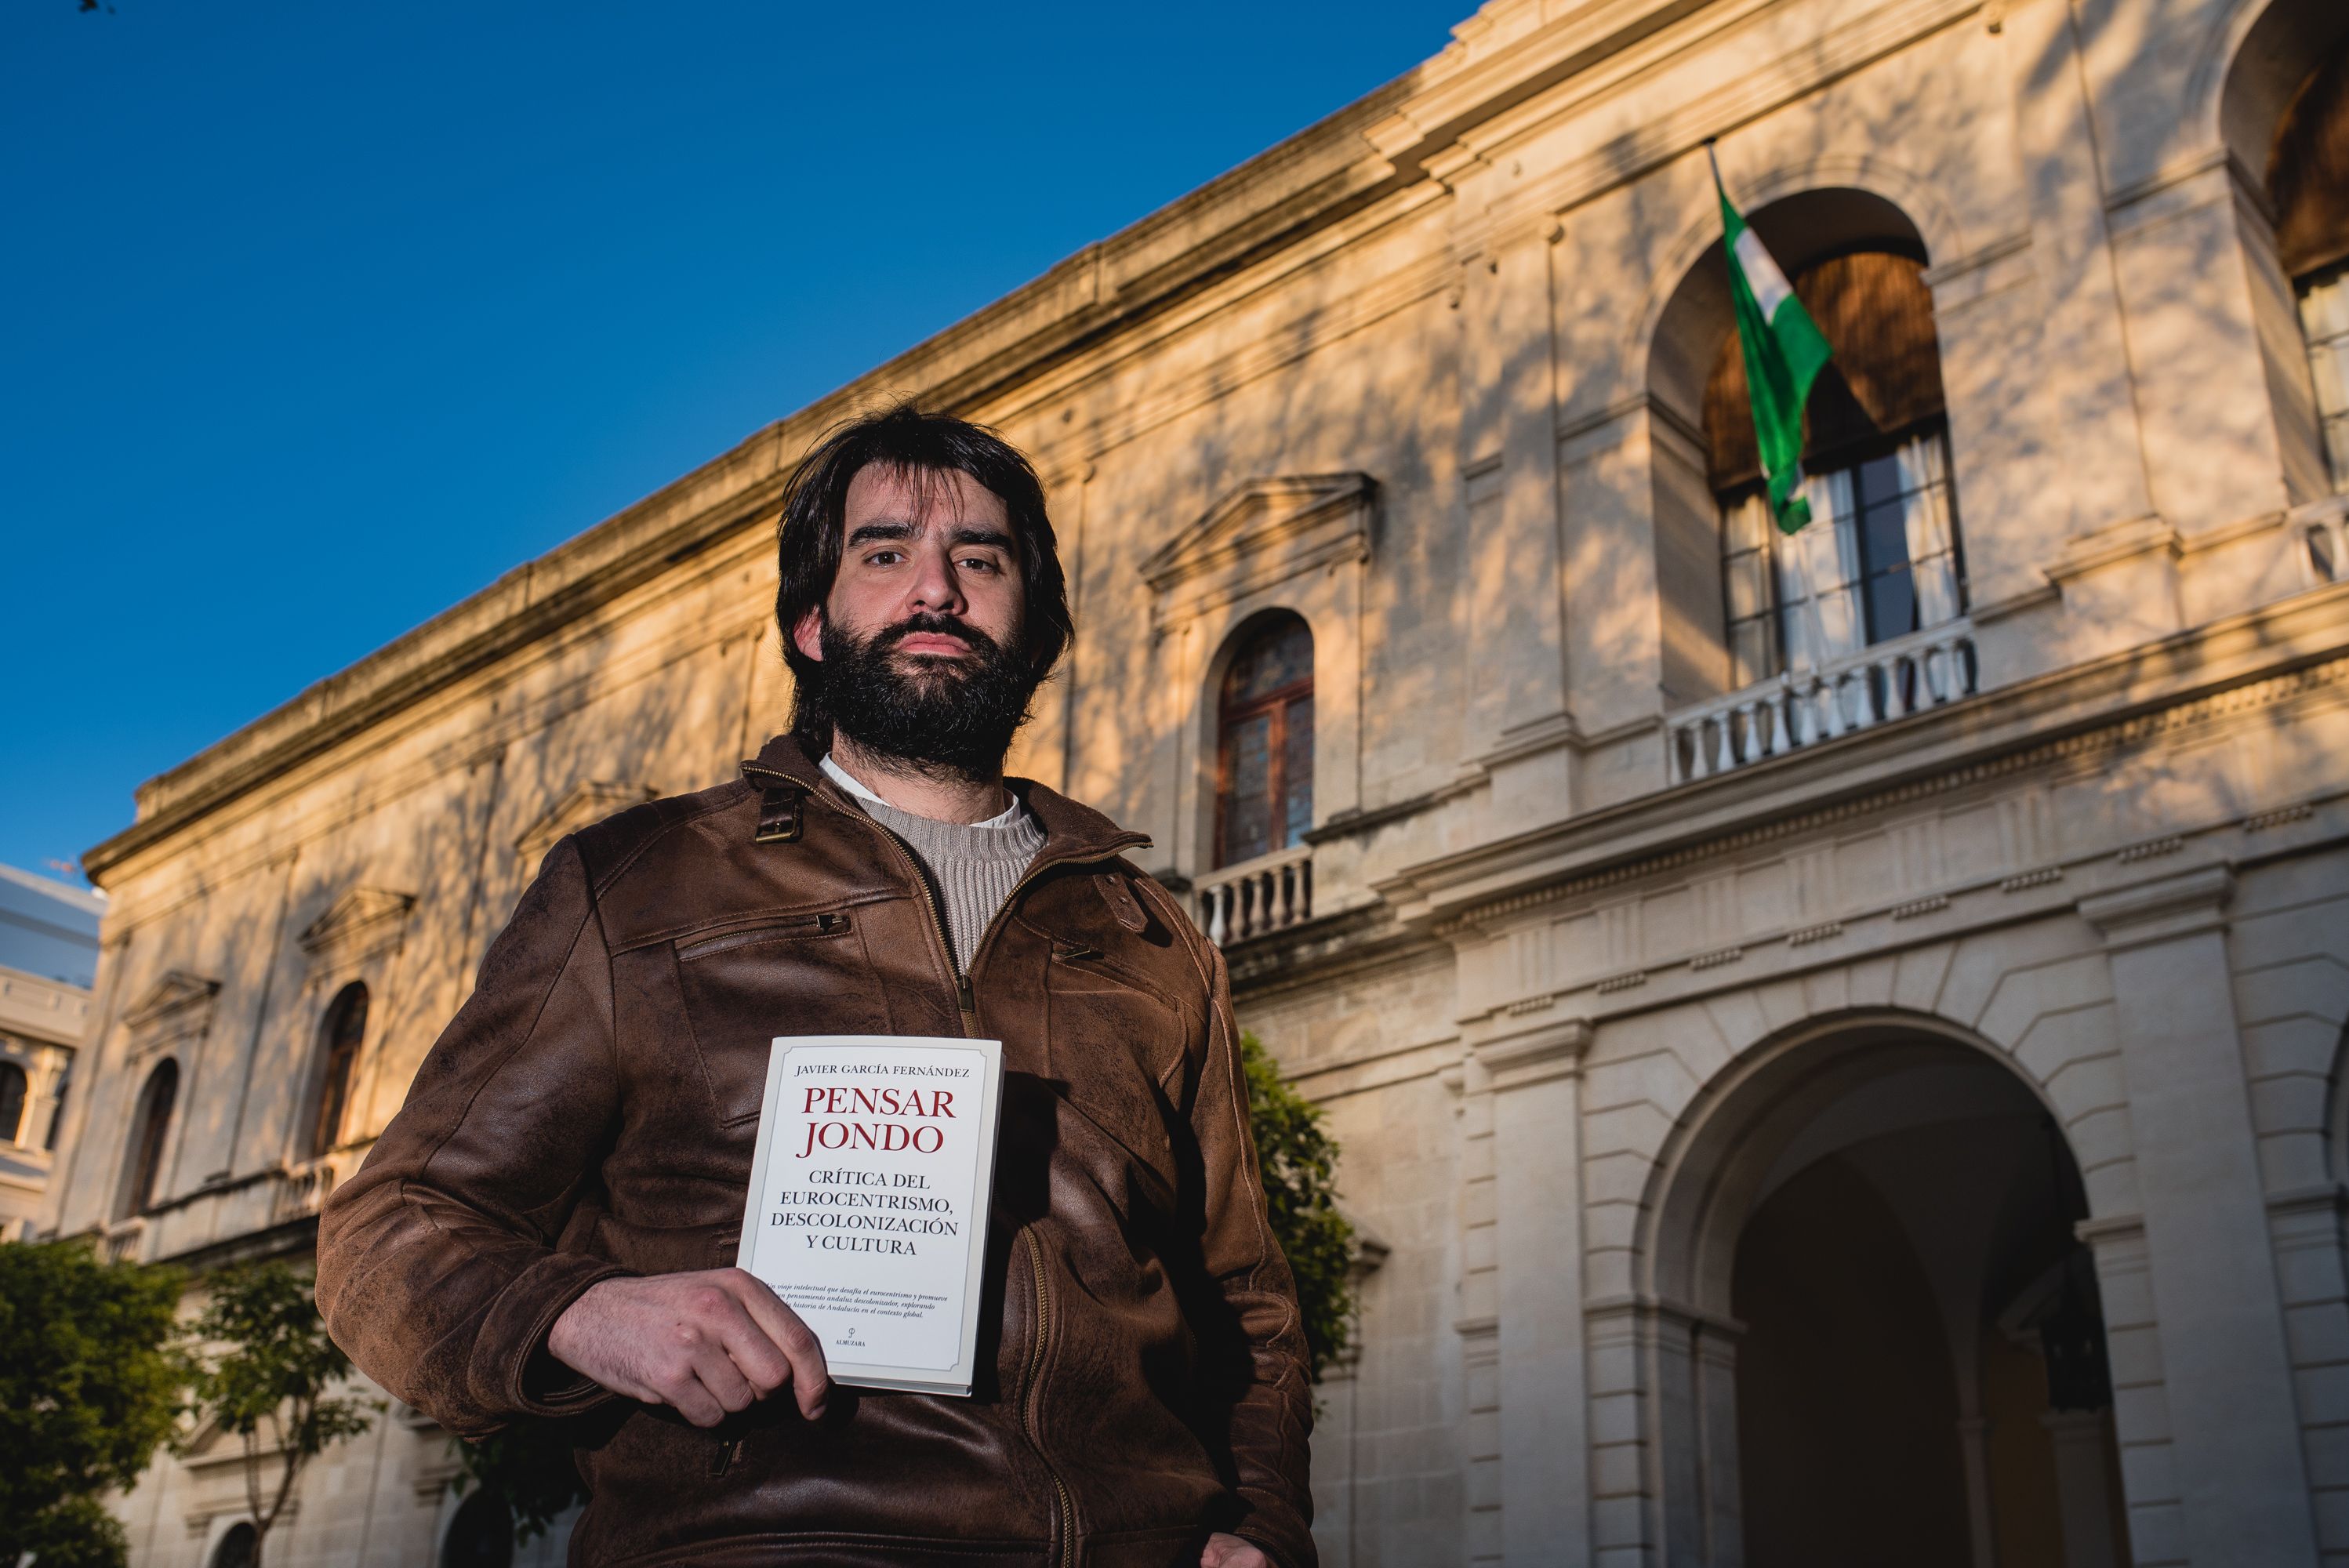 El autor de 'Pensar jondo', el pasado marte en Sevilla. Mauri Buhigas